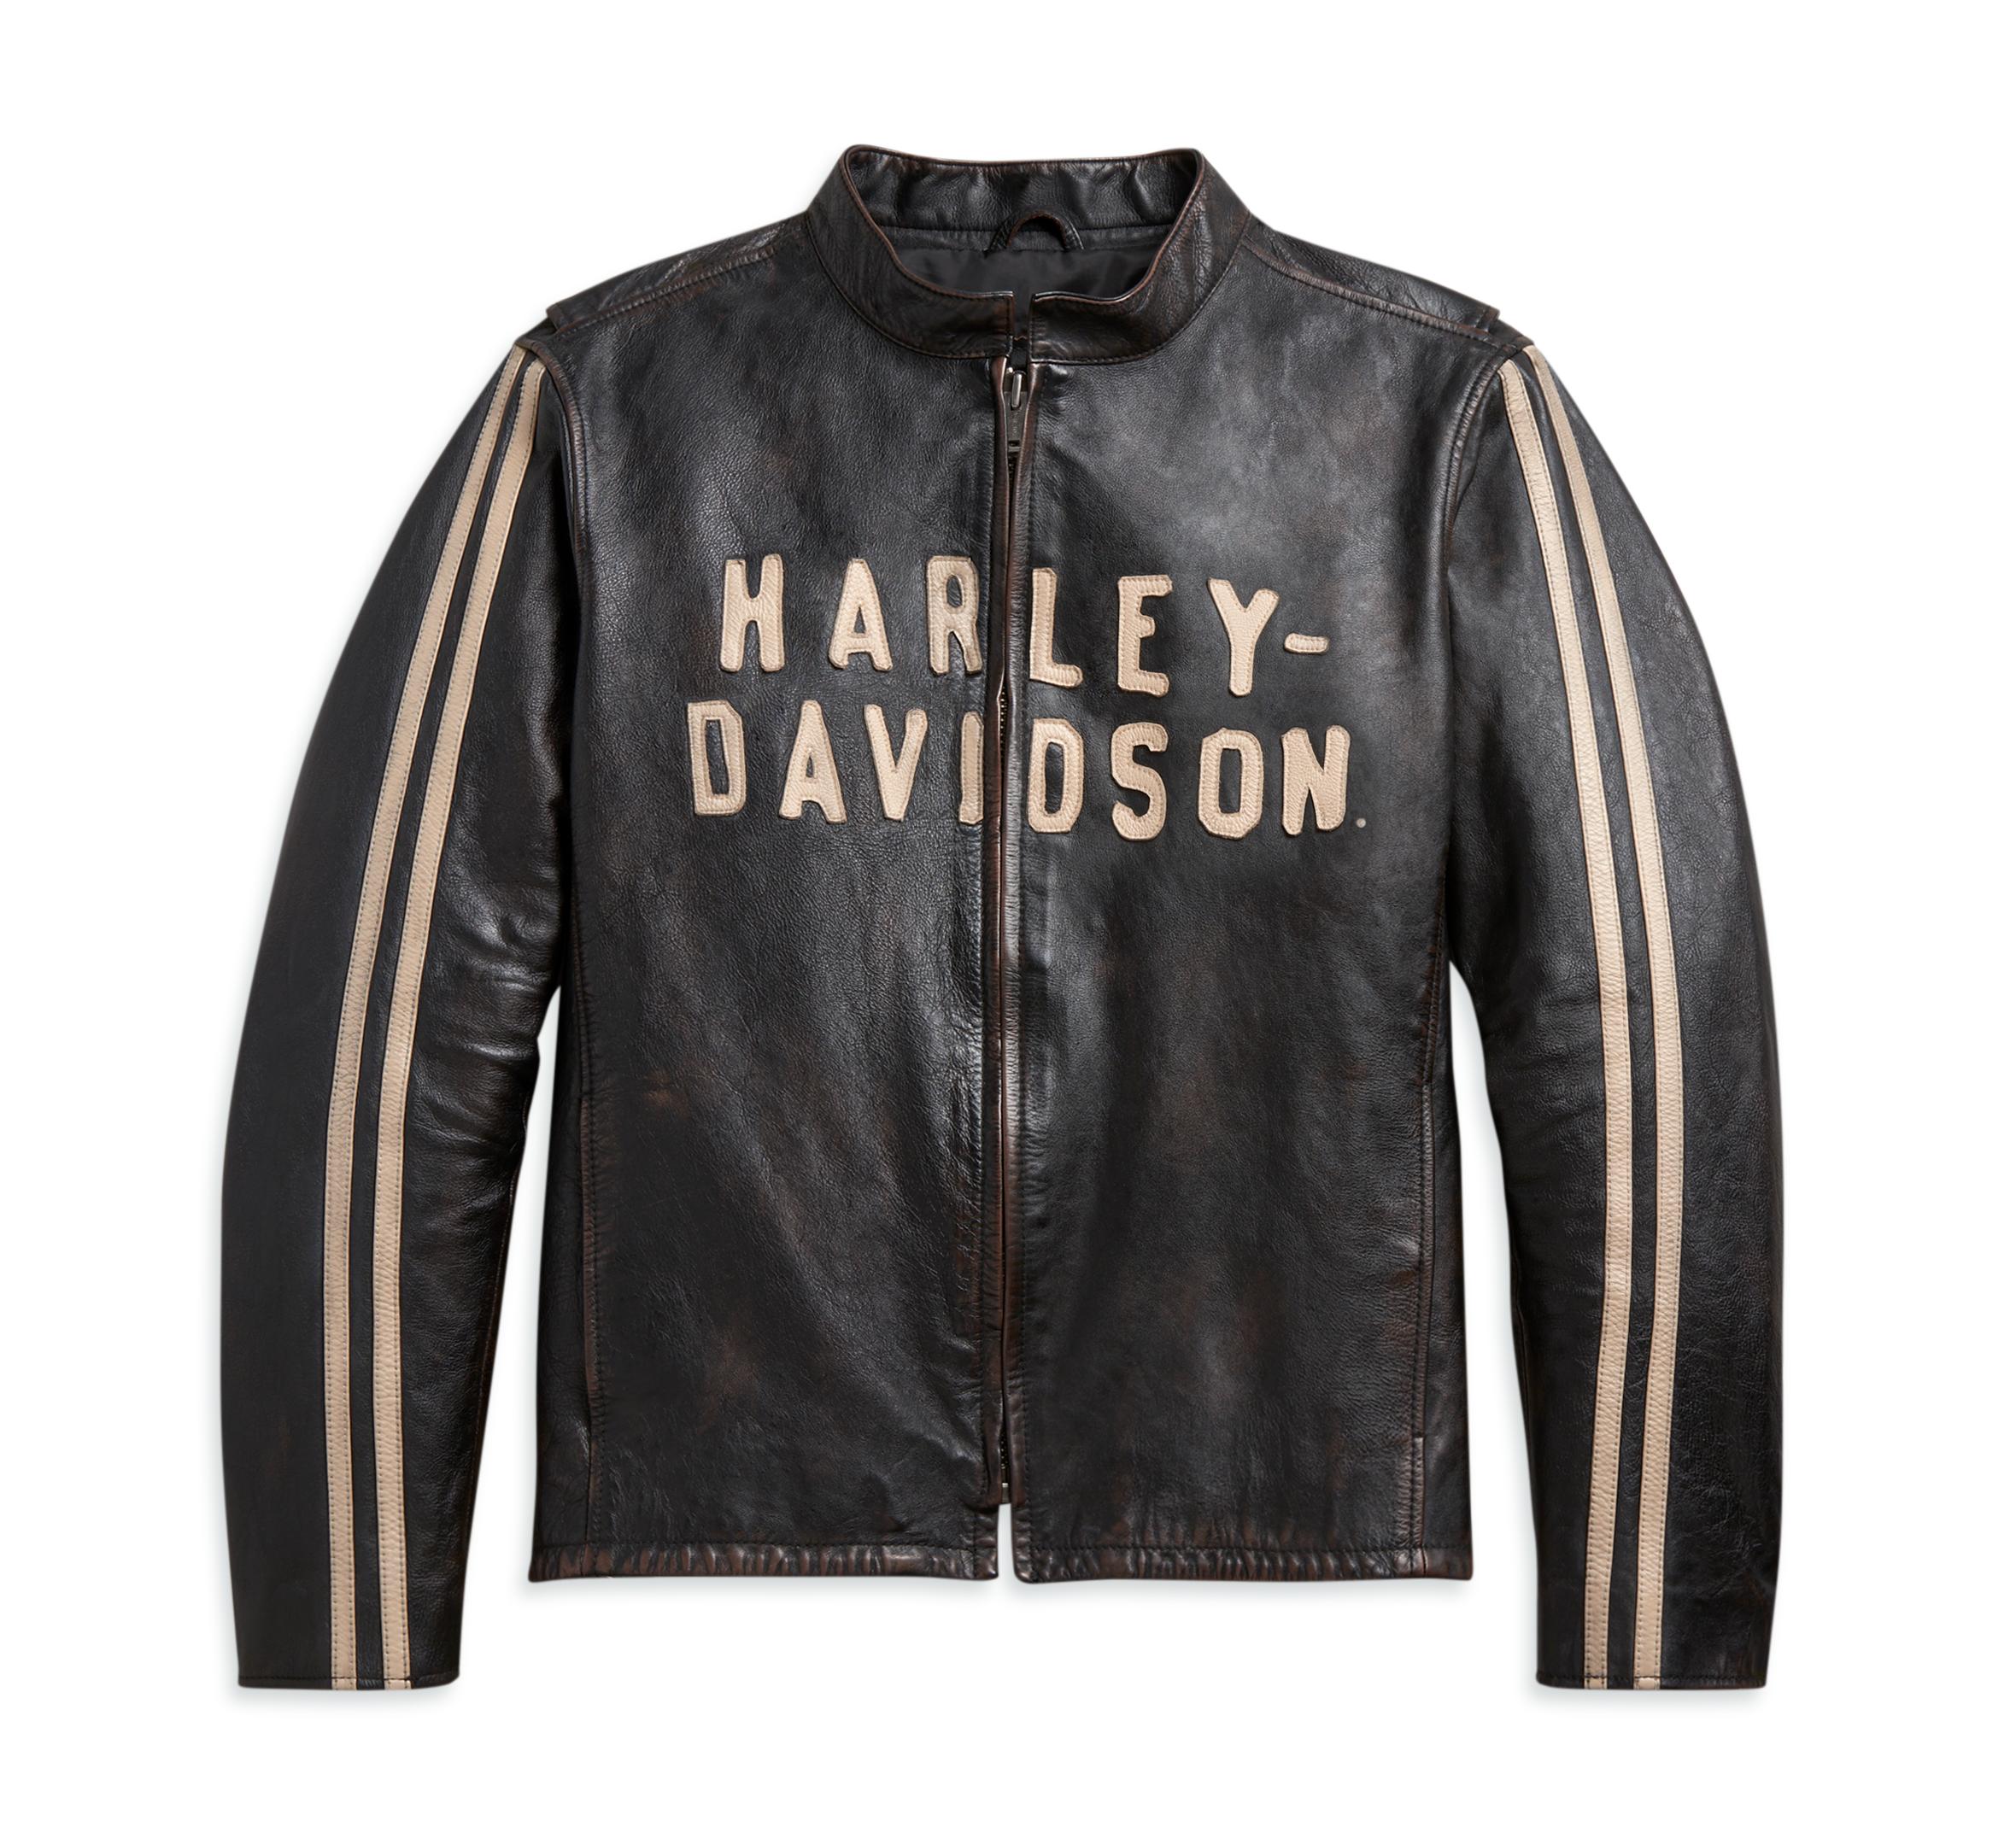 Harley Davidson Men Black Jacket on Hleatherjackets